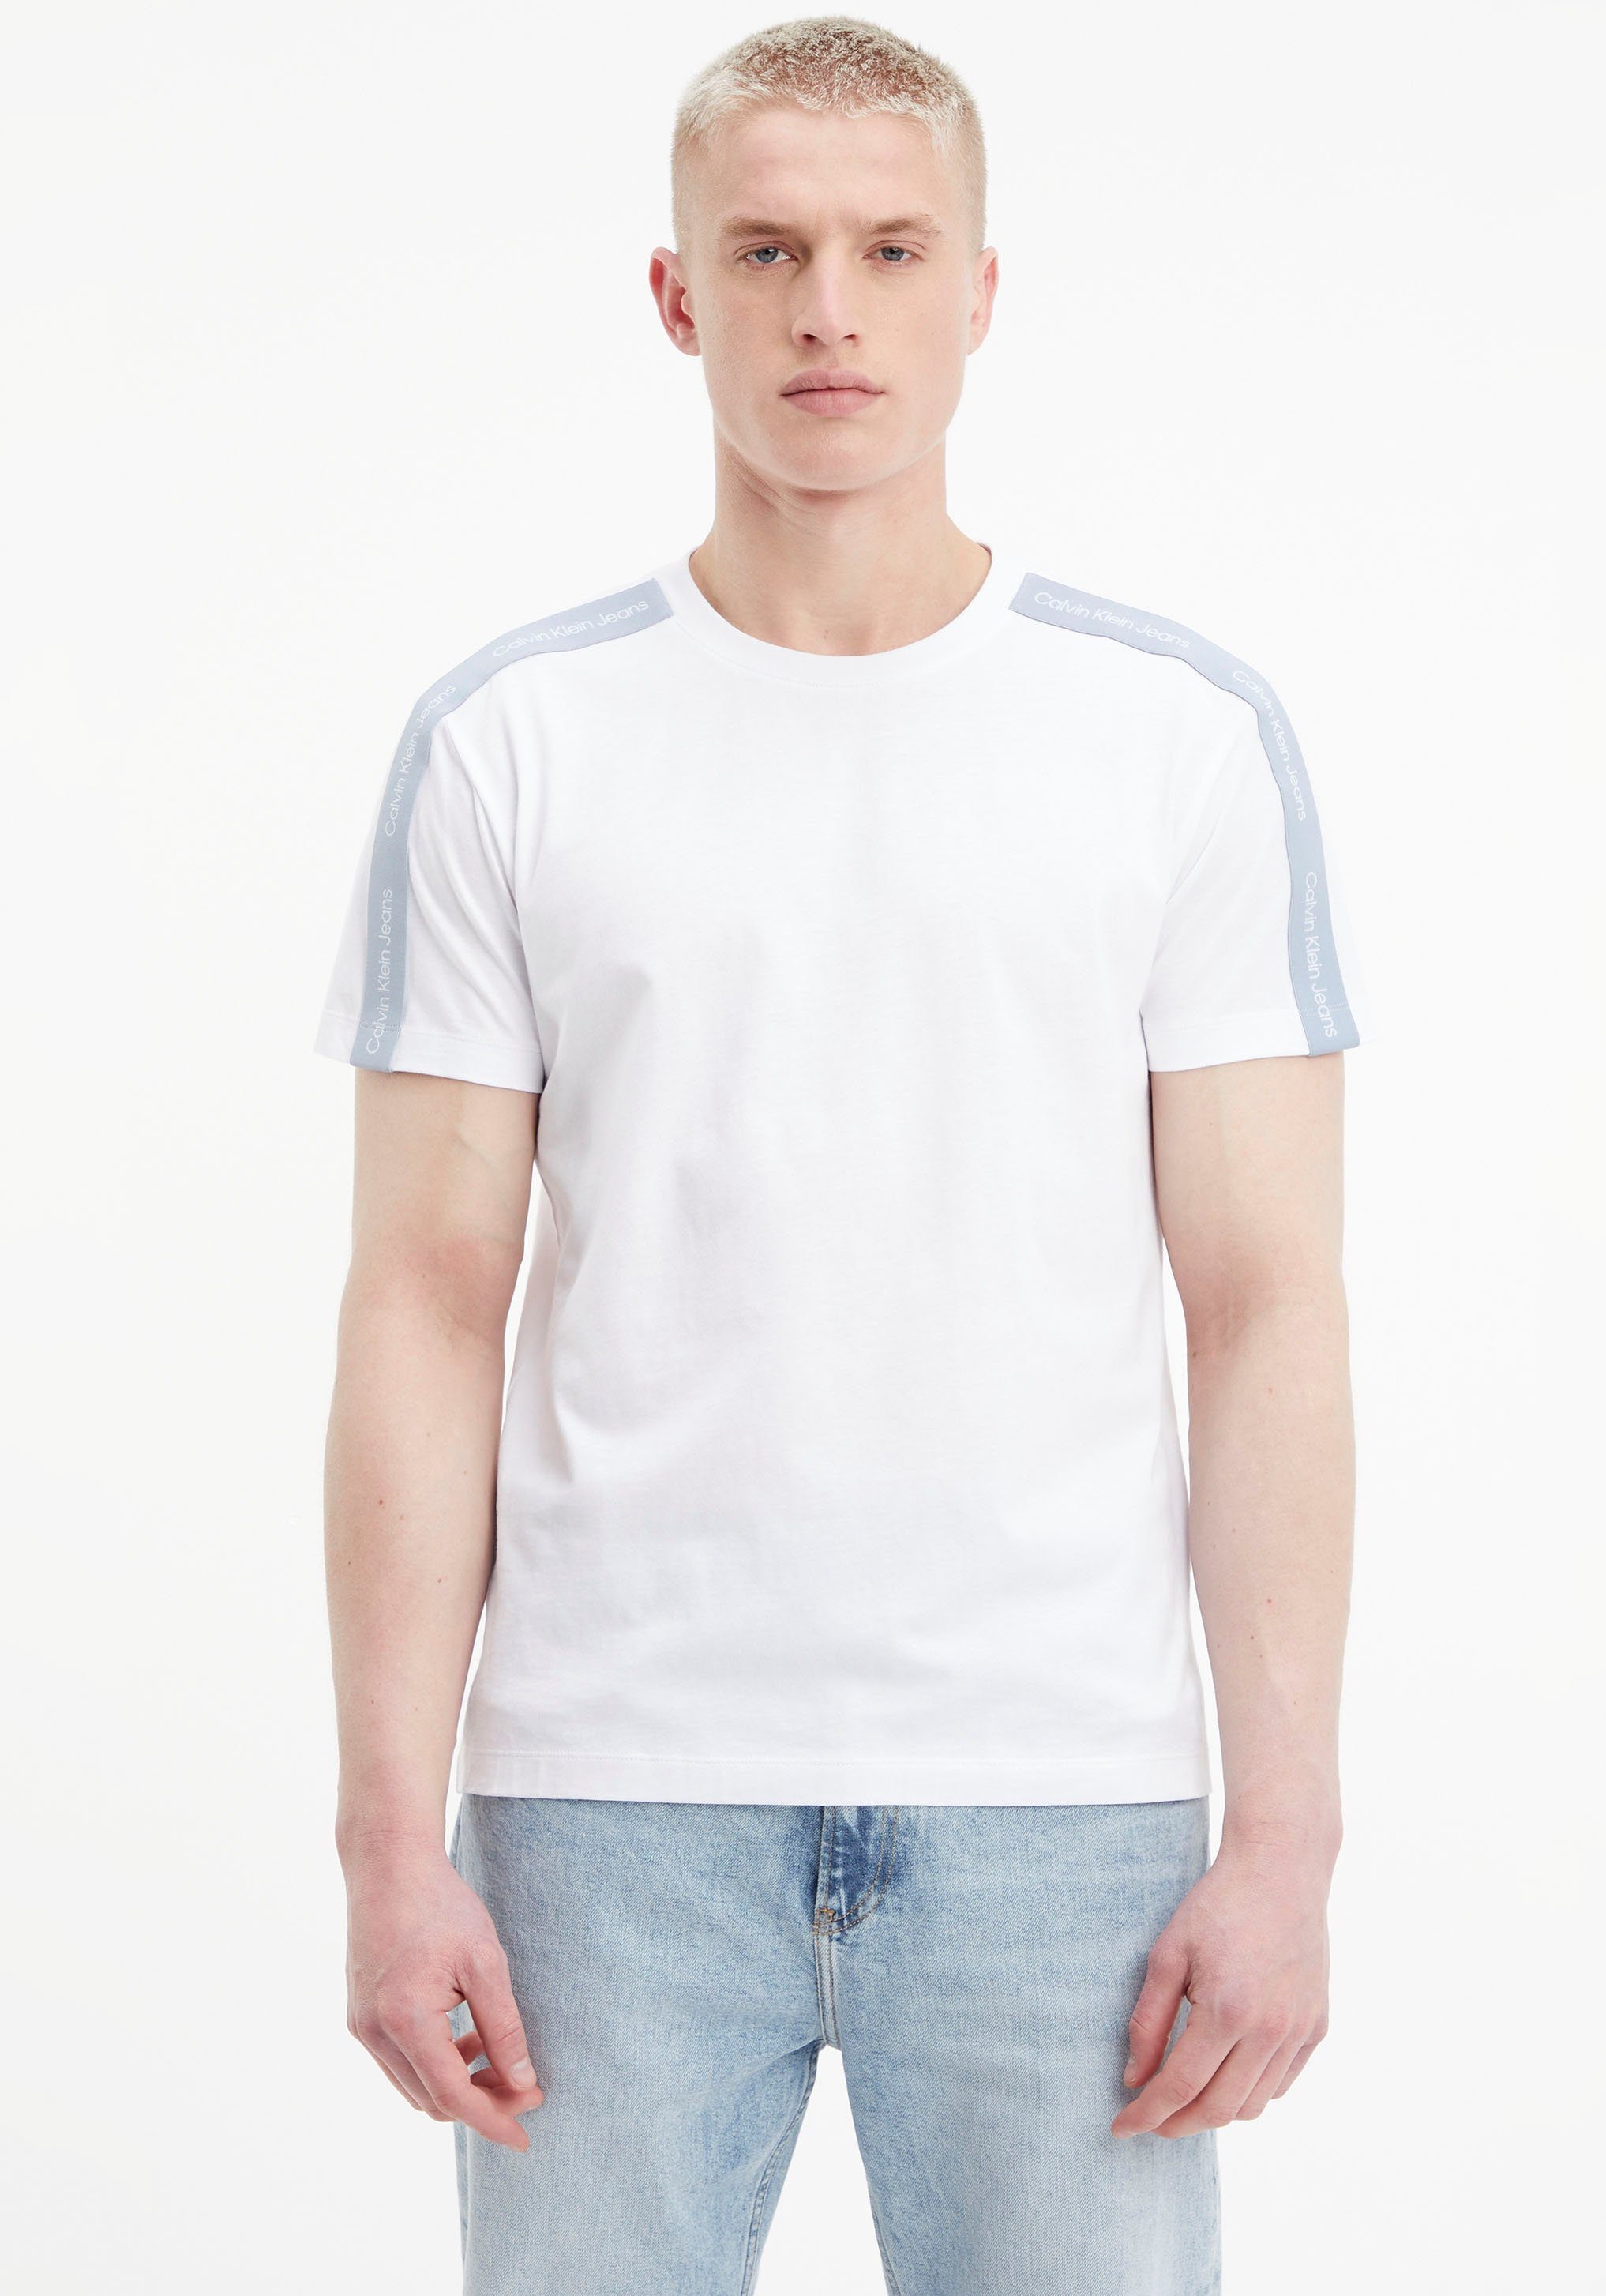 Schulter TAPE SHOULDER TEE, auf der CONTRAST Jeans T-Shirt Klein Markentape Calvin